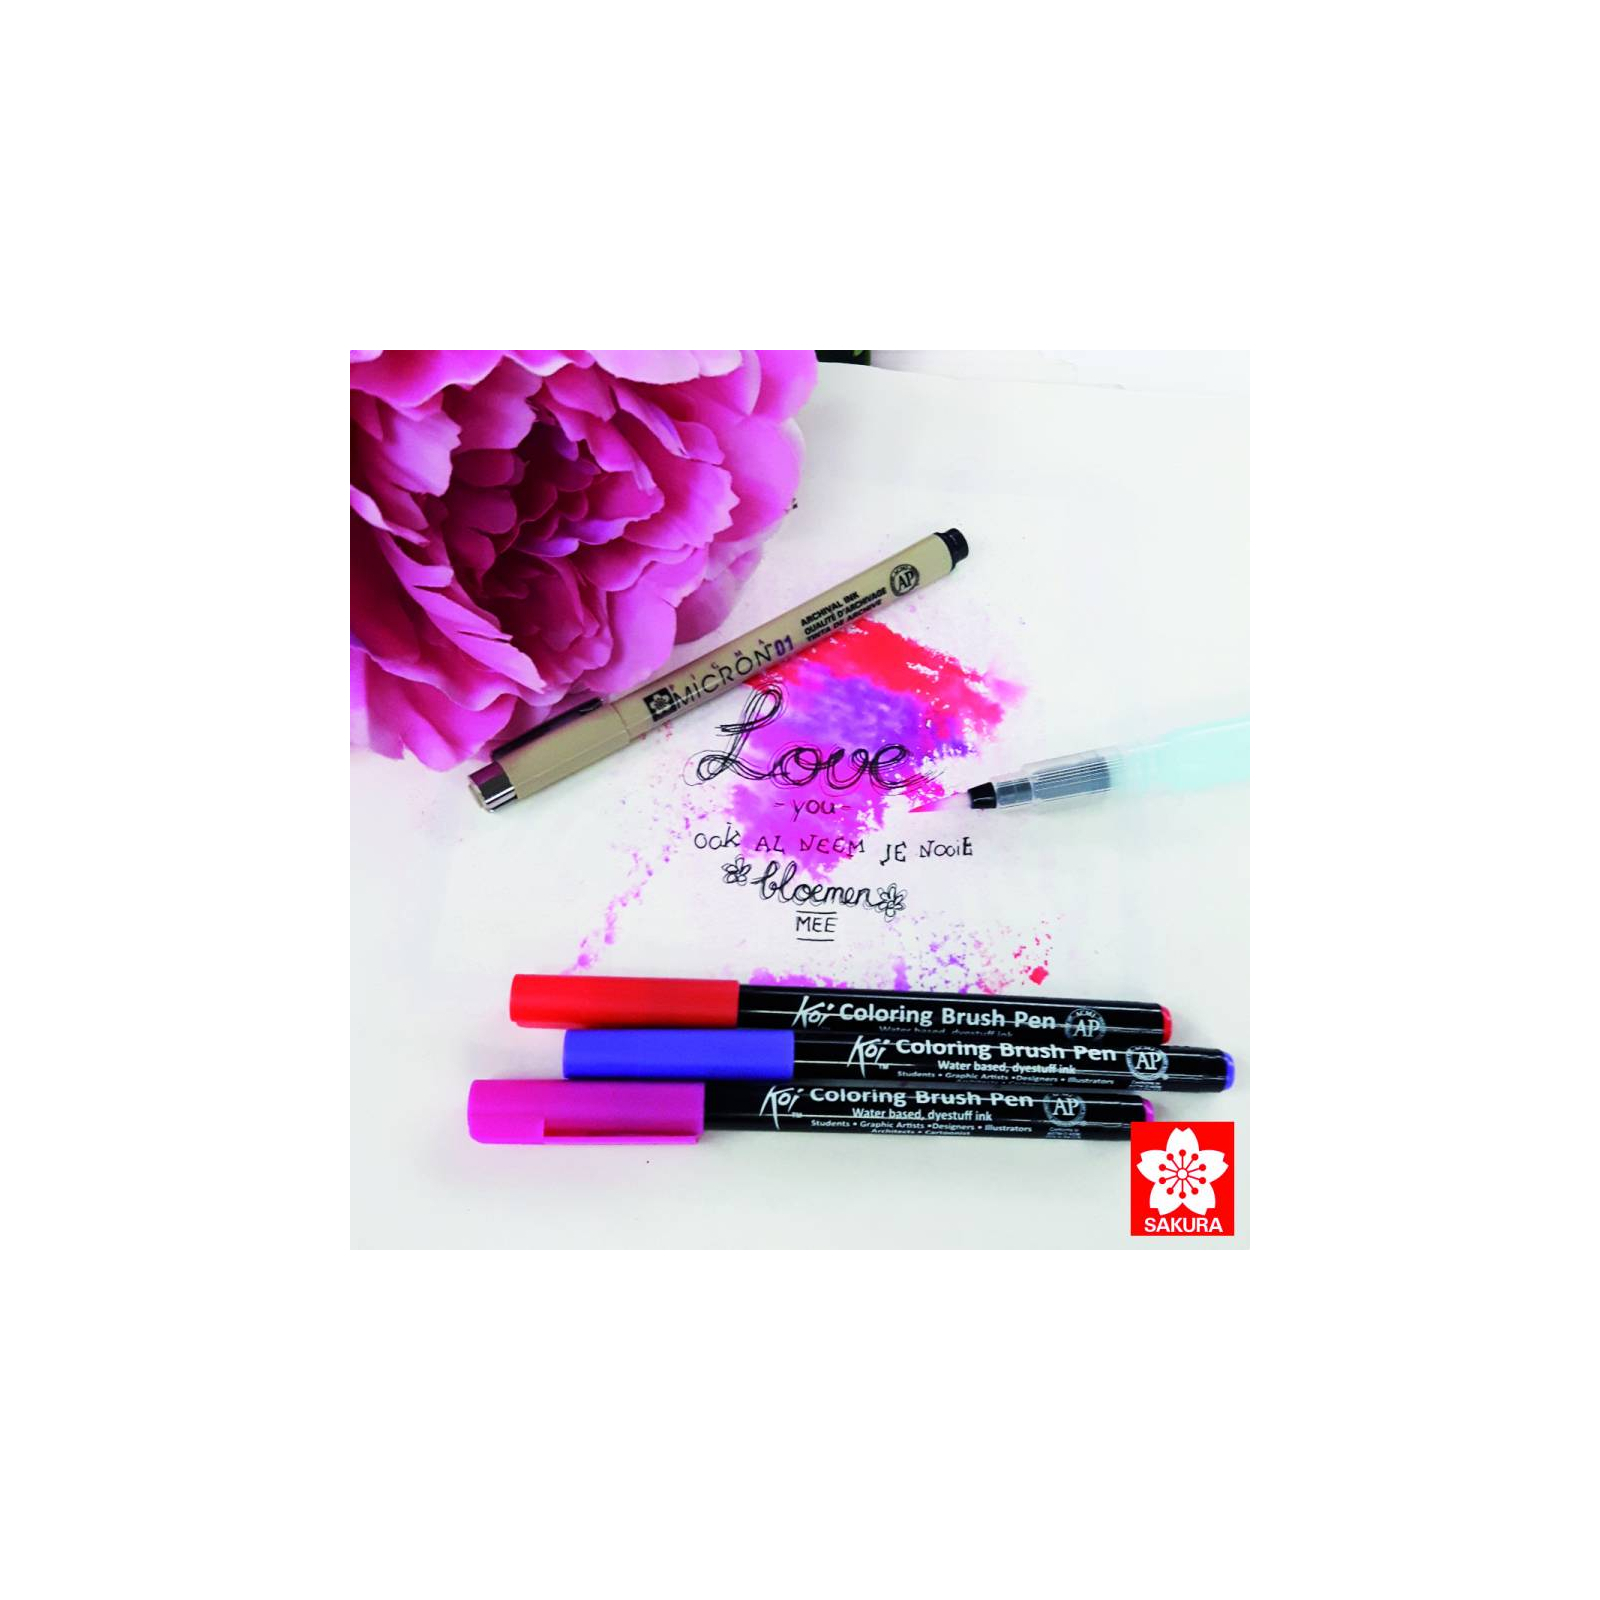 Художественный маркер KOI набор Coloring Brush Pen, 48 цветов (084511391796) изображение 2